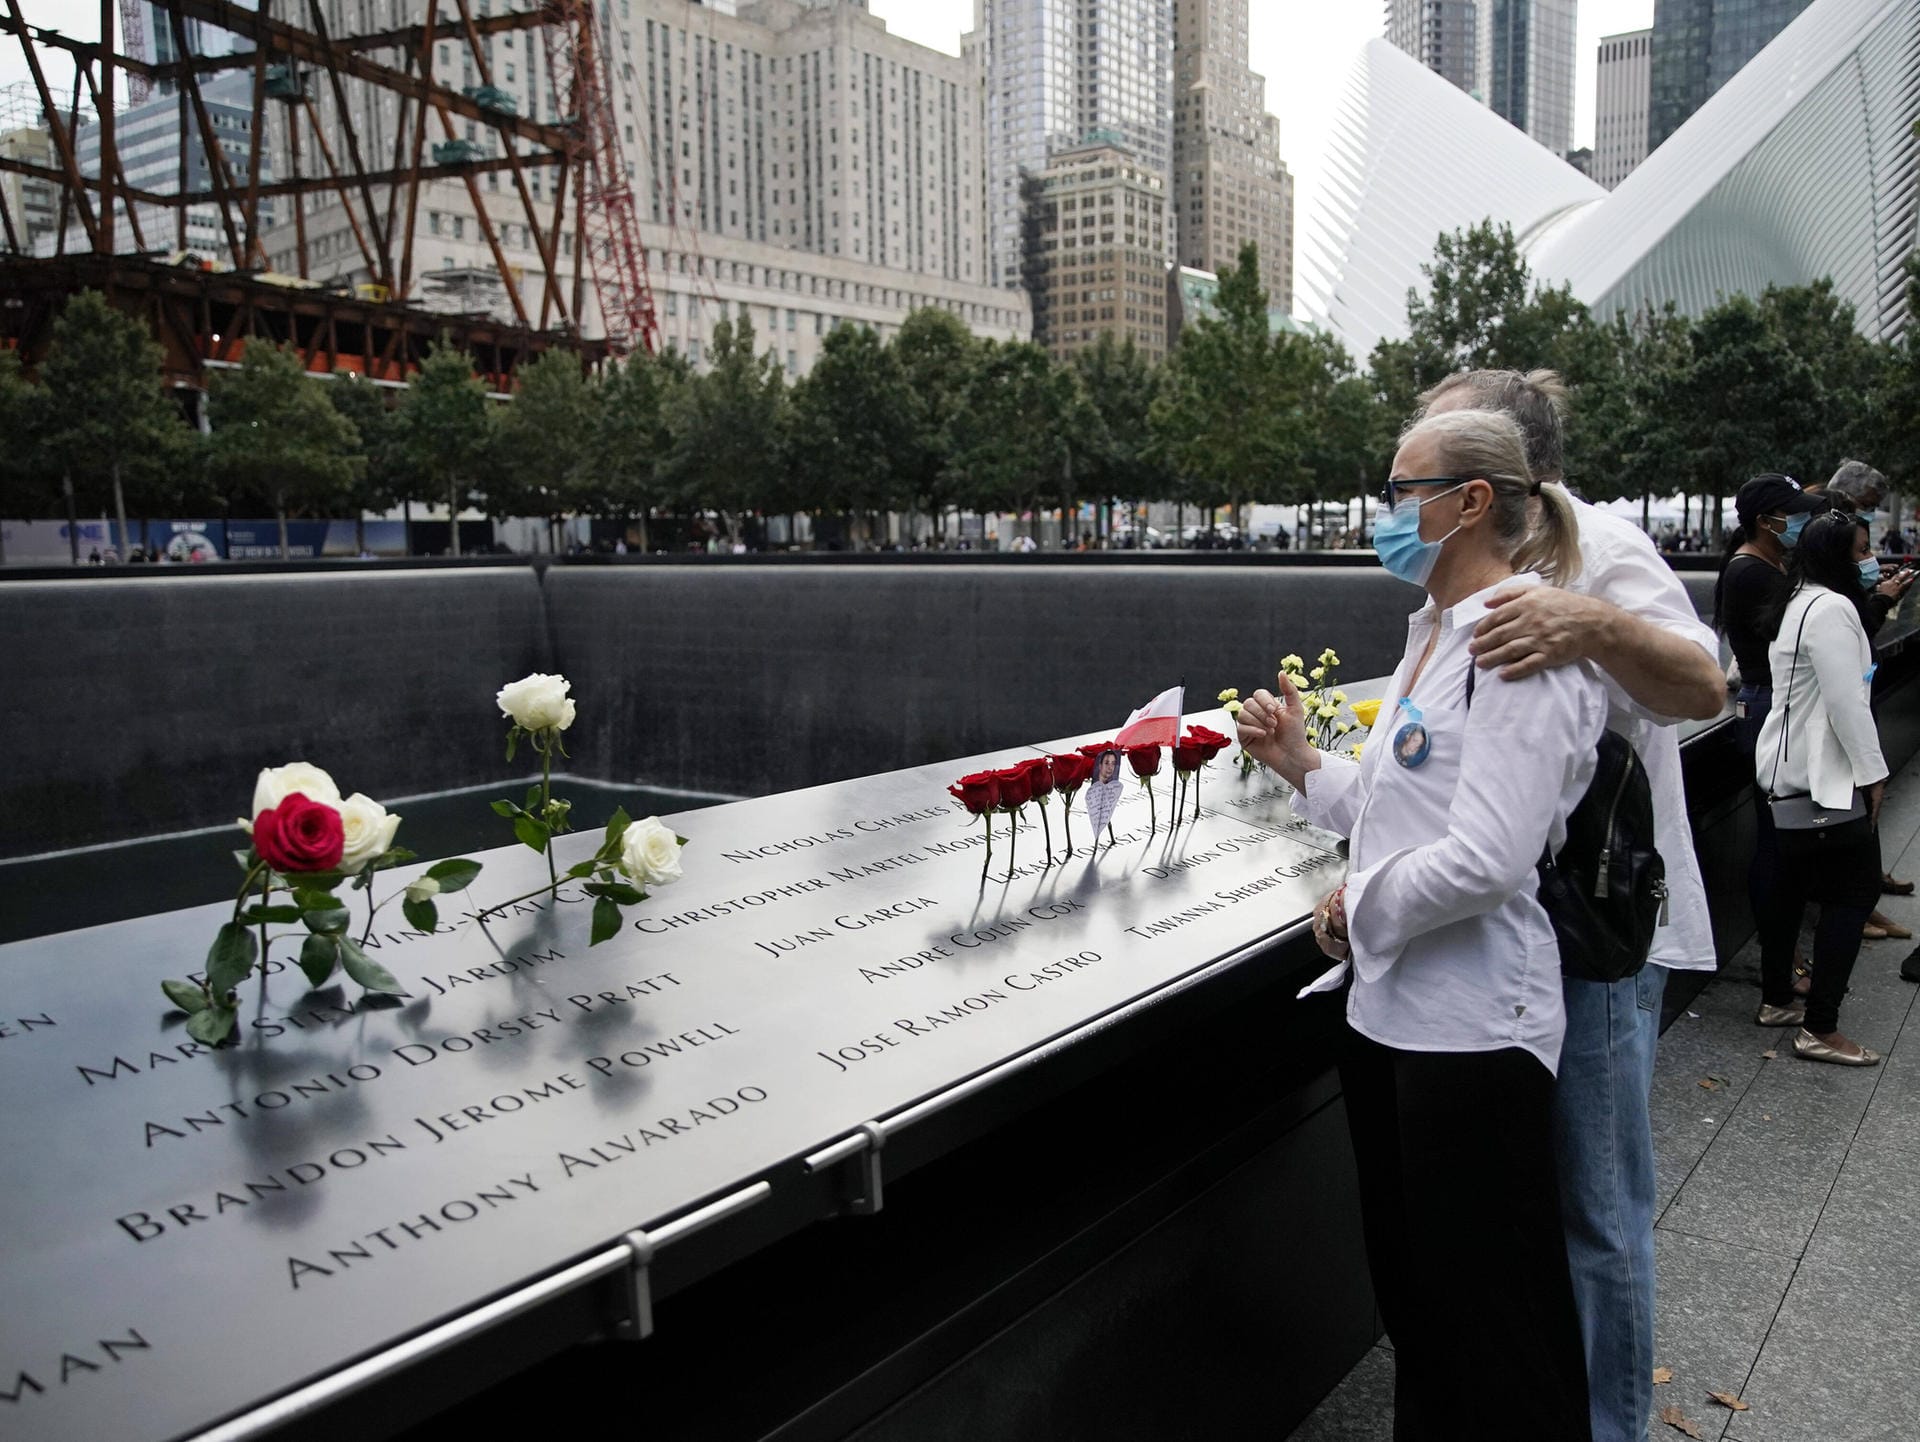 Am "Ground Zero" stehen auf Steintafeln die Namen aller identifizierten Menschen, die bei 9/11 ums Leben kamen. Bis heute konnte nicht jeder Leiche eine Identität zugeordnet werden.